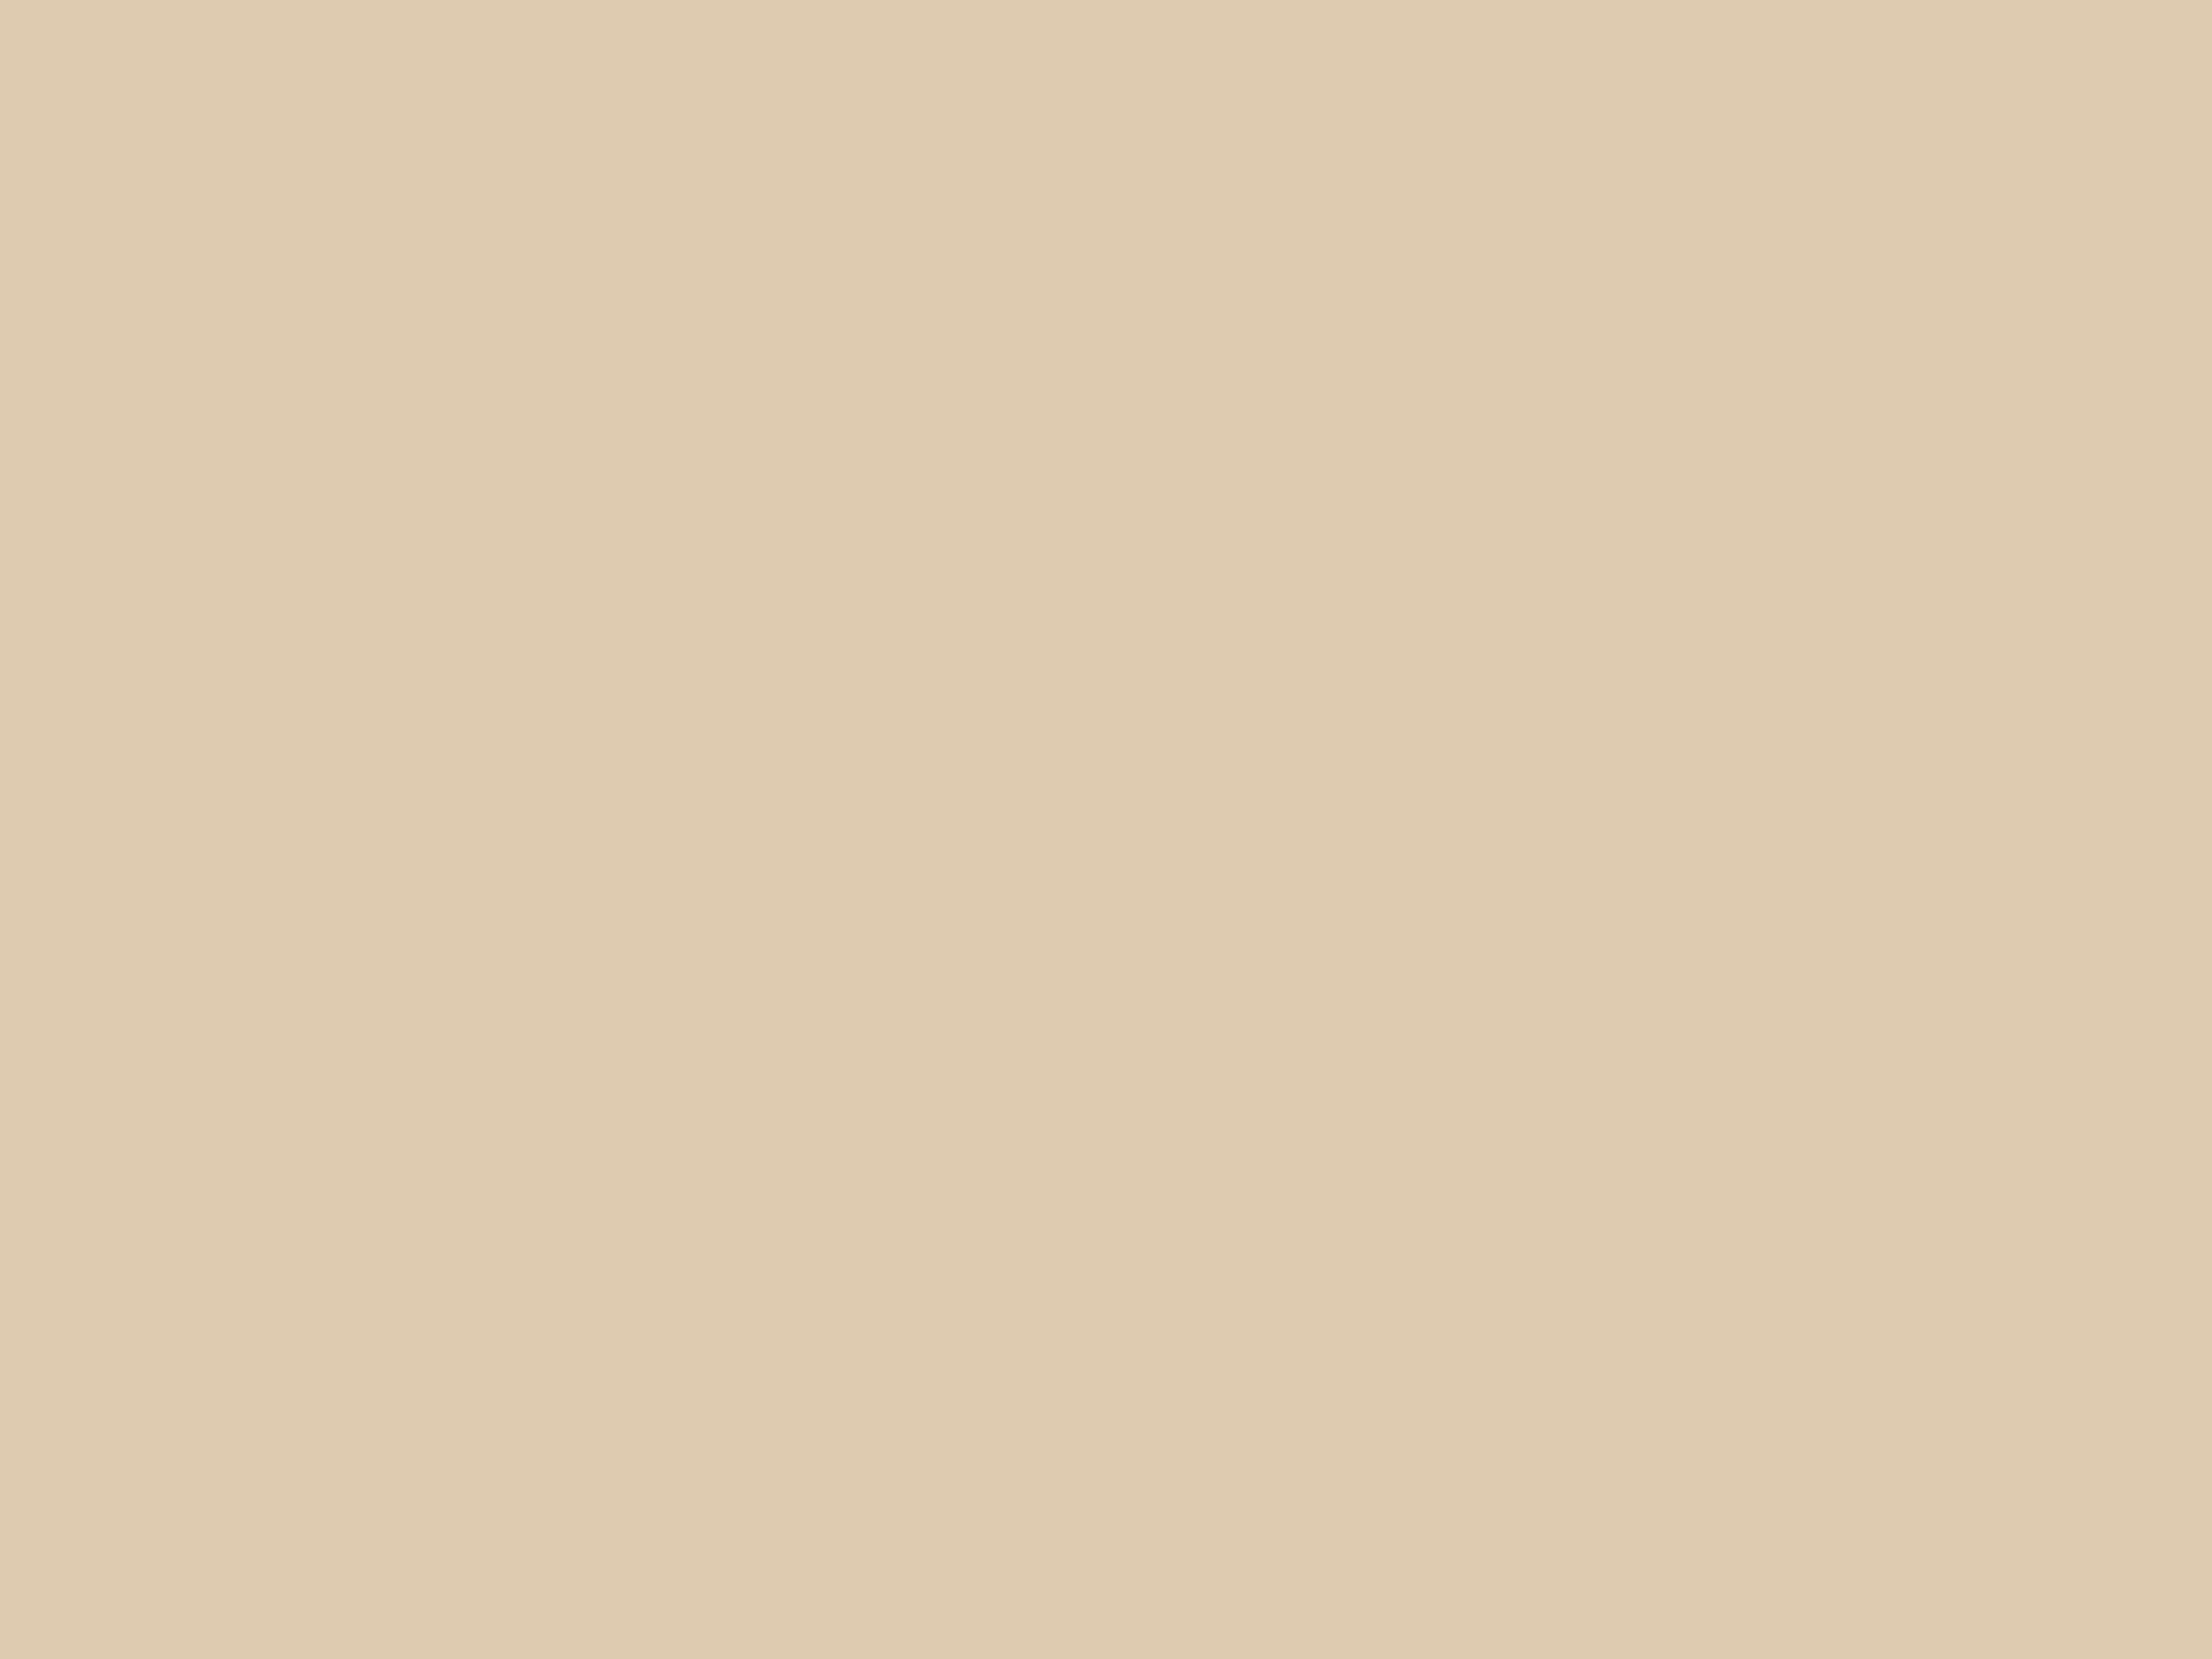 Парфюмерия «Праздникъ цветовъ». Рекламный лист товарищества «Брокарь и К» в Москве. Около 1913. Алтайский государственный краеведческий музей, Барнаул